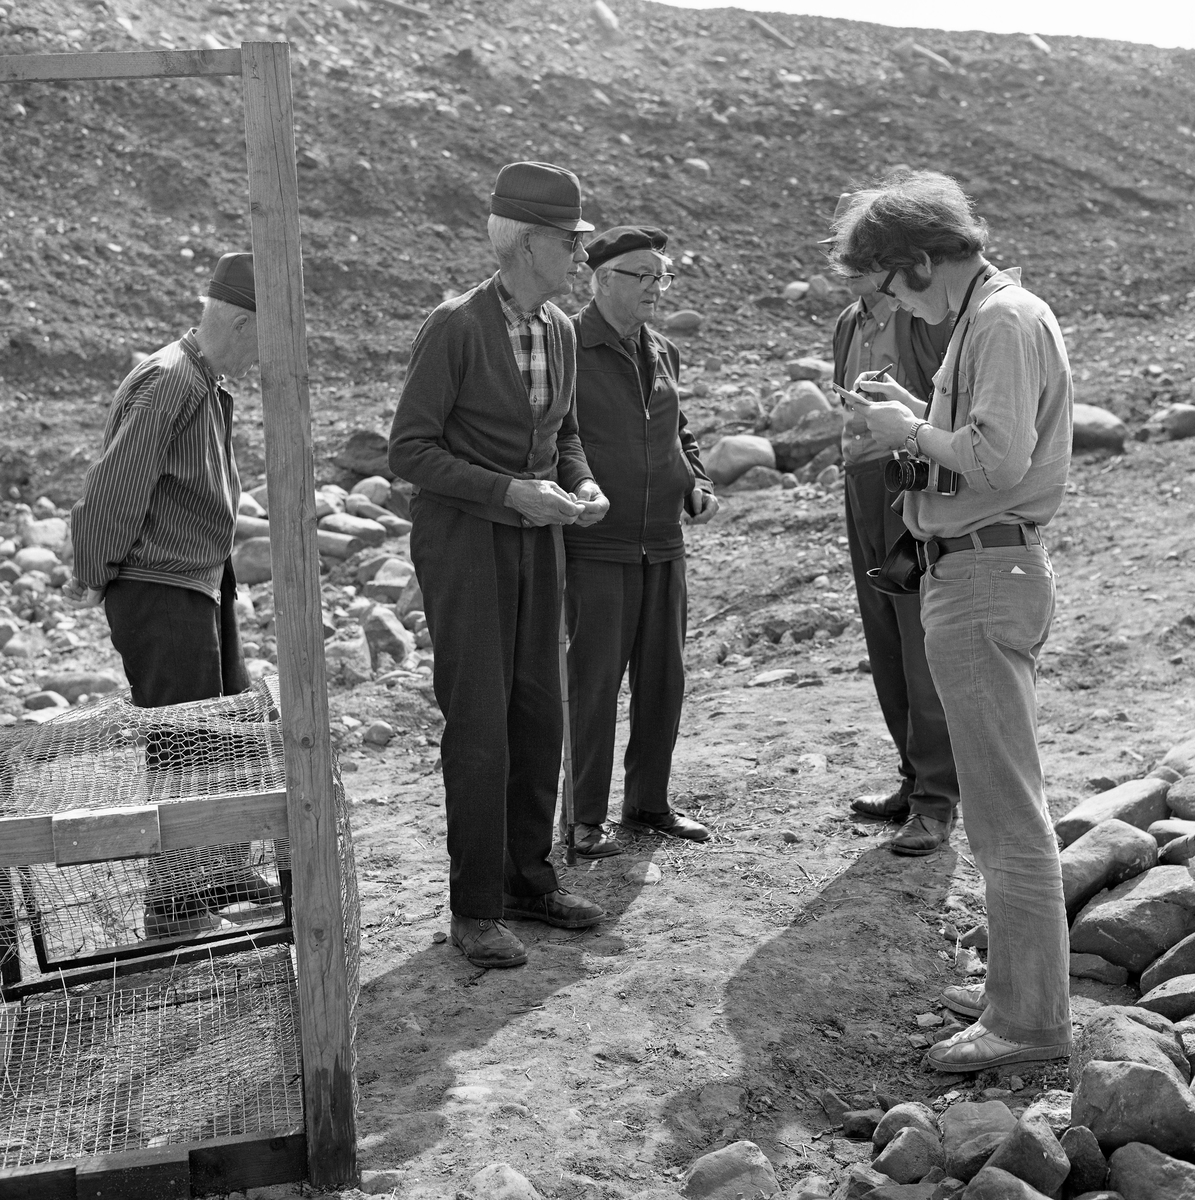 Til høyre på dette bildet ser vi Åsmund Eknæs (1940-1981) på feltarbeid på Fossbakken under garden Nedre Kåterud i Stange, der det tradisjonelle kupefisket etter mort (her kalt «sørenne») i den nedre delen av Svartelva, som på dette tidspunktet var truet av en utvidelse av hovedvegen mellom Oslo og Trondheim, E6-  Eknæs er fotografert med en notatblokk i hendene og kamera på magen mens han snakket med fire informanter, blant annet Martinus Hovie (lengst til venstre), Håkon Berge og Birger Børresen (skjult bak Eknæs).  Mannen som sto som nummer tre fra venstre har vi foreløpig ikke navnet på. Til venstre i bildet ser vi ei av kupene (rusene).  Mens de tradisjonelle kupene i dette fisket var lagd av trespiler med bomullsnett, var de som ble brukt de siste åra øyensynlig lagd av nettingtyper som ellers ble brukt i hønsehus og pelsdyrfarmer.

Åsmund Eknæs var fra Krokstadelva i Nedre Eiker i Buskerud.  Han avla magsistergradseksamen i etnologi ved Universitetet i Oslo med avhandlingsarbeidet «Det tradisjonelle laksefiskeriet i Drammenselva - Naturforhold og redskapsutvikling» i 1972  Deretter ble Eknæs ansatt som vitenskapelig assistent ved Norsk Skogbruksmuseum i Elverum.  I 1974 fikk han konservatortittel, etter at en vitenskapelig komité hadde gjennomgått den faglitterære produksjonen hans.  Eknæs var sentral da Norsk Skogbruksmuseum bygde basisutstillinger om ferskvannsfiske, jaktvåpen og tollekniver, og han var en flittig feltarbeider, særlig på steder der det pågikk fiskeaktiviteter.  I 1979 gav han ut boka «Innlandsfiske», som gir en oversikt over innlandsfiskets historie her til lands.  Han foreleste også for grunnfagsstudentene i etnologi om dette emnet.  Eknæs ble dessverre rammet av kreft og døde i 1981, bare drøyt 40 år gammel.